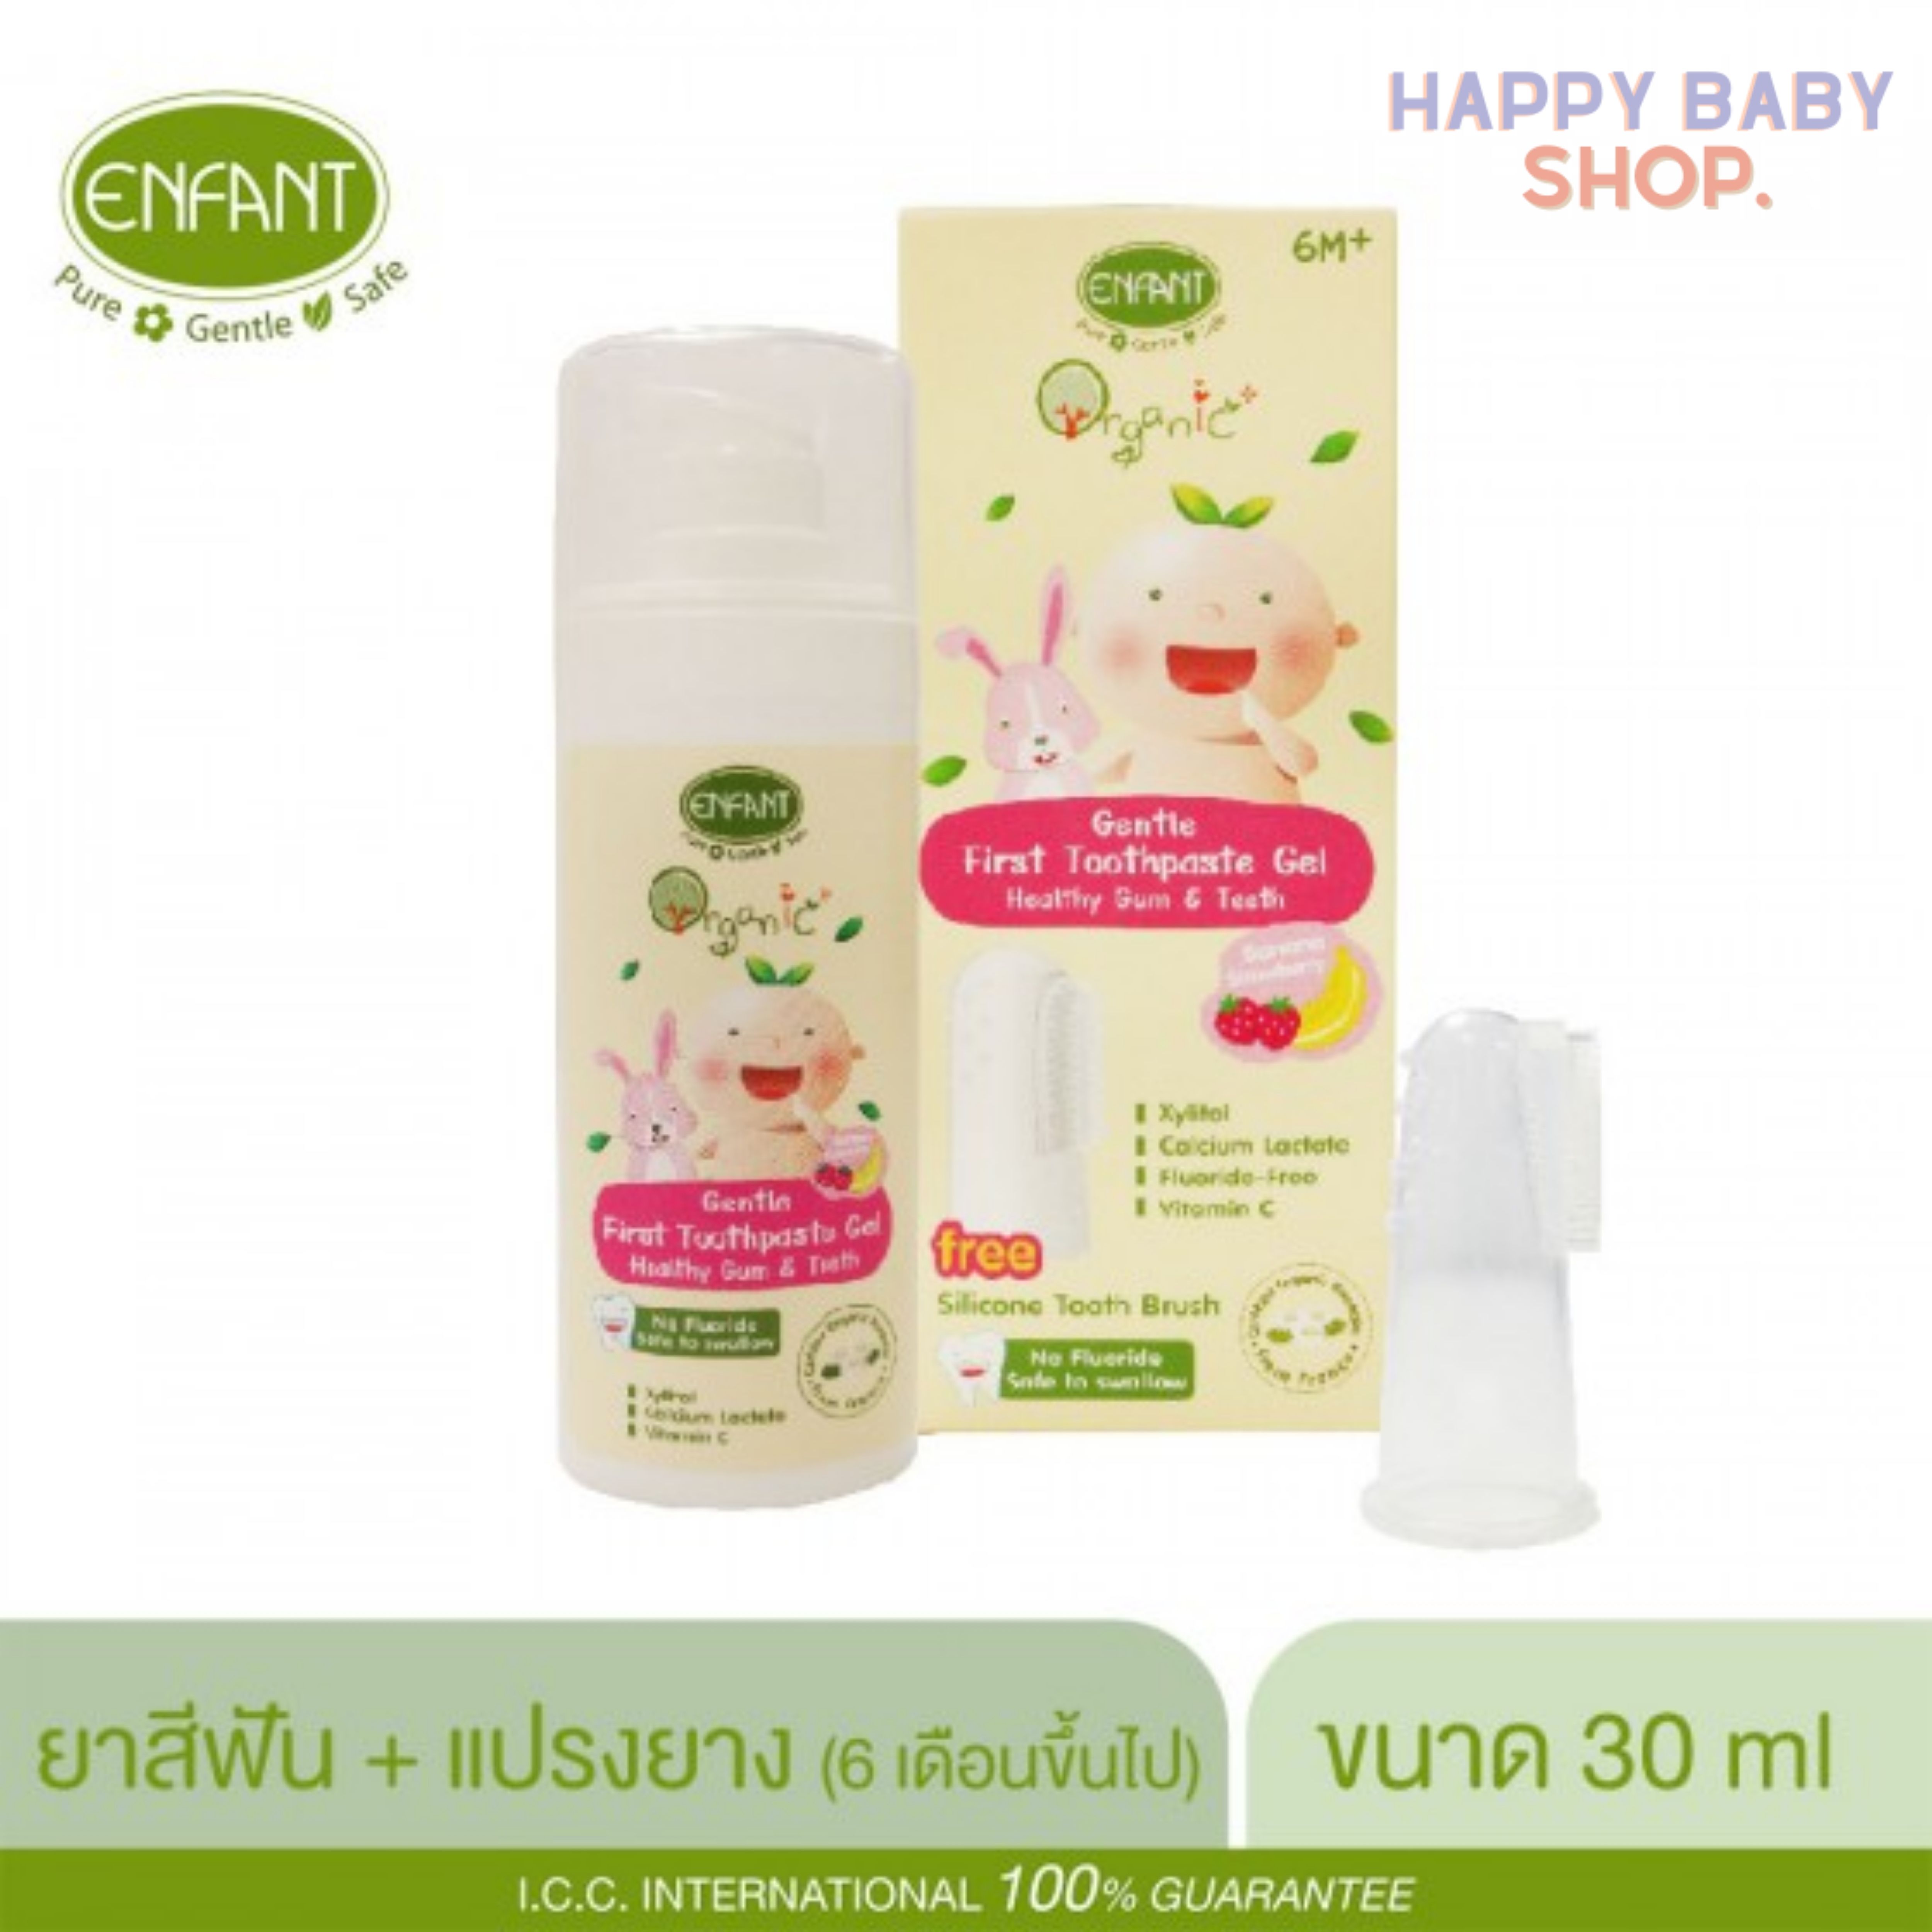 คูปองส่งฟรีEnfant Organic Plus Gentle First Toothpaste Gel ยาสีฟัน สูตรเจล สำหรับเด็กเล็ก [6m+] สตอเบอรี่ 30ml.